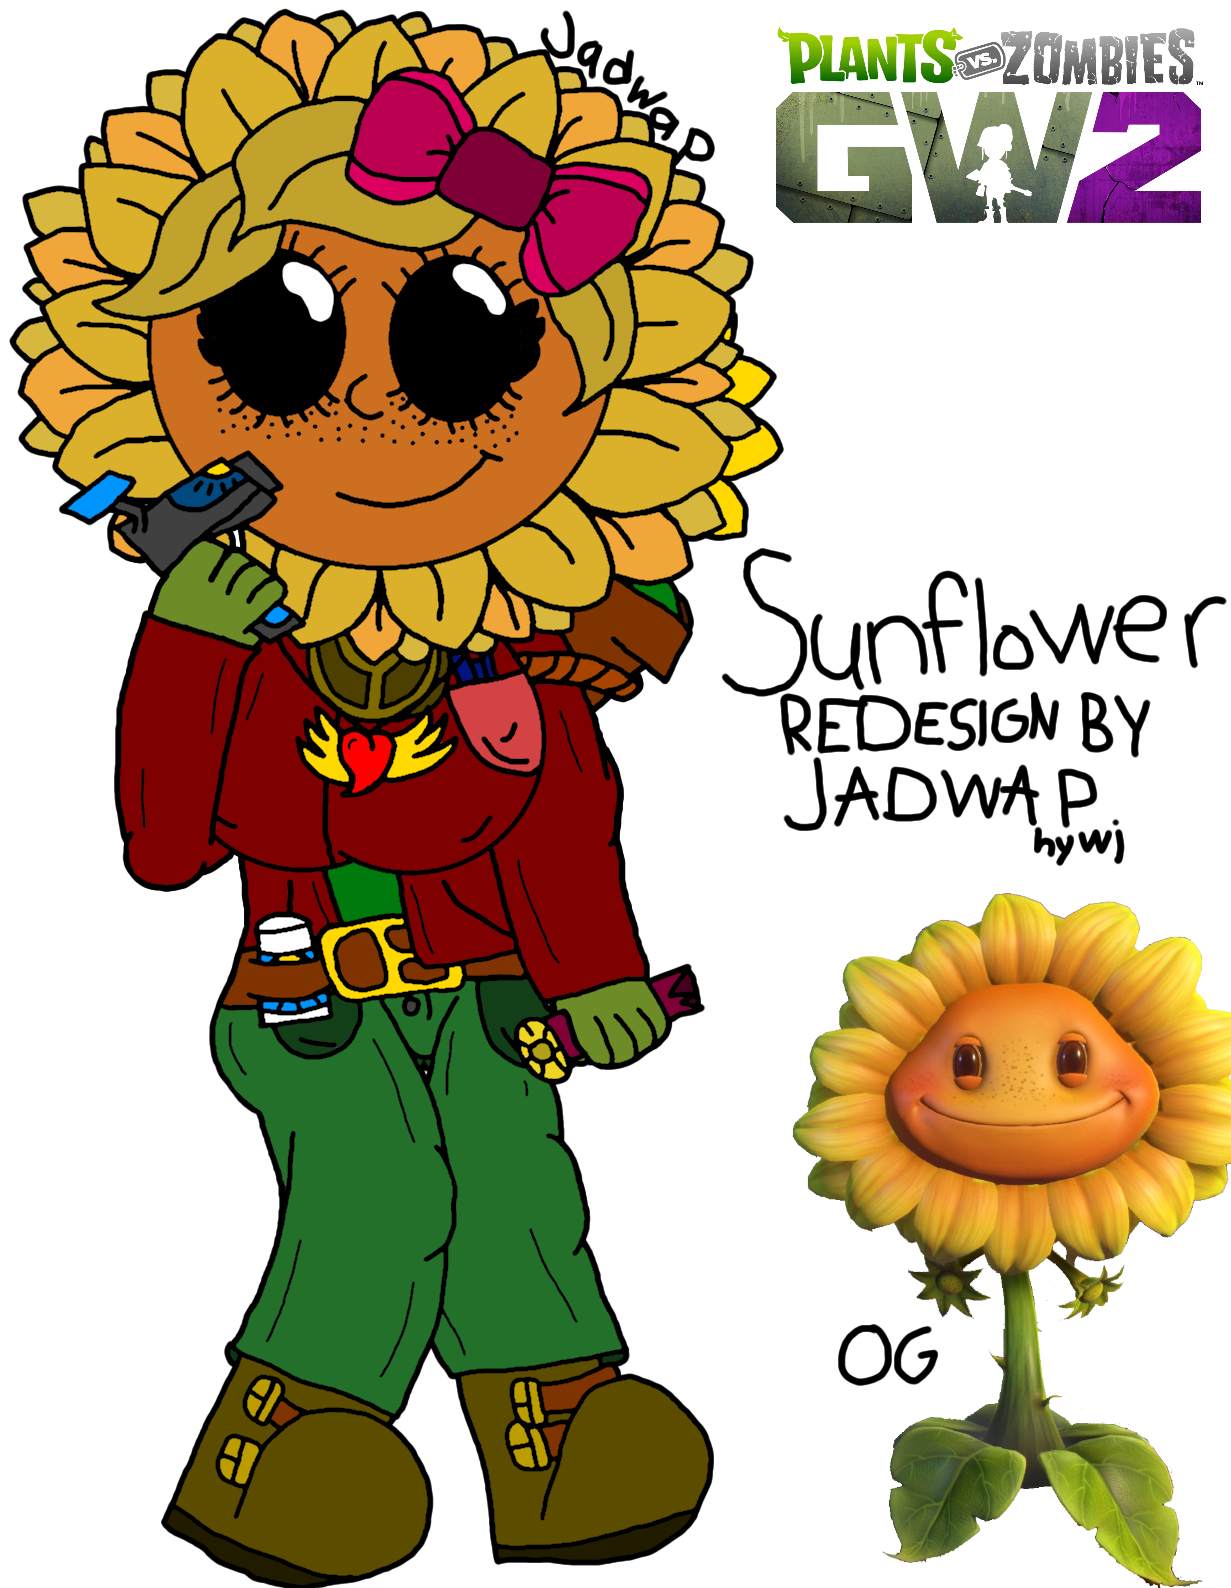 Sunflower - Plants vs. Zombies: Garden Warfare II by Hywj on